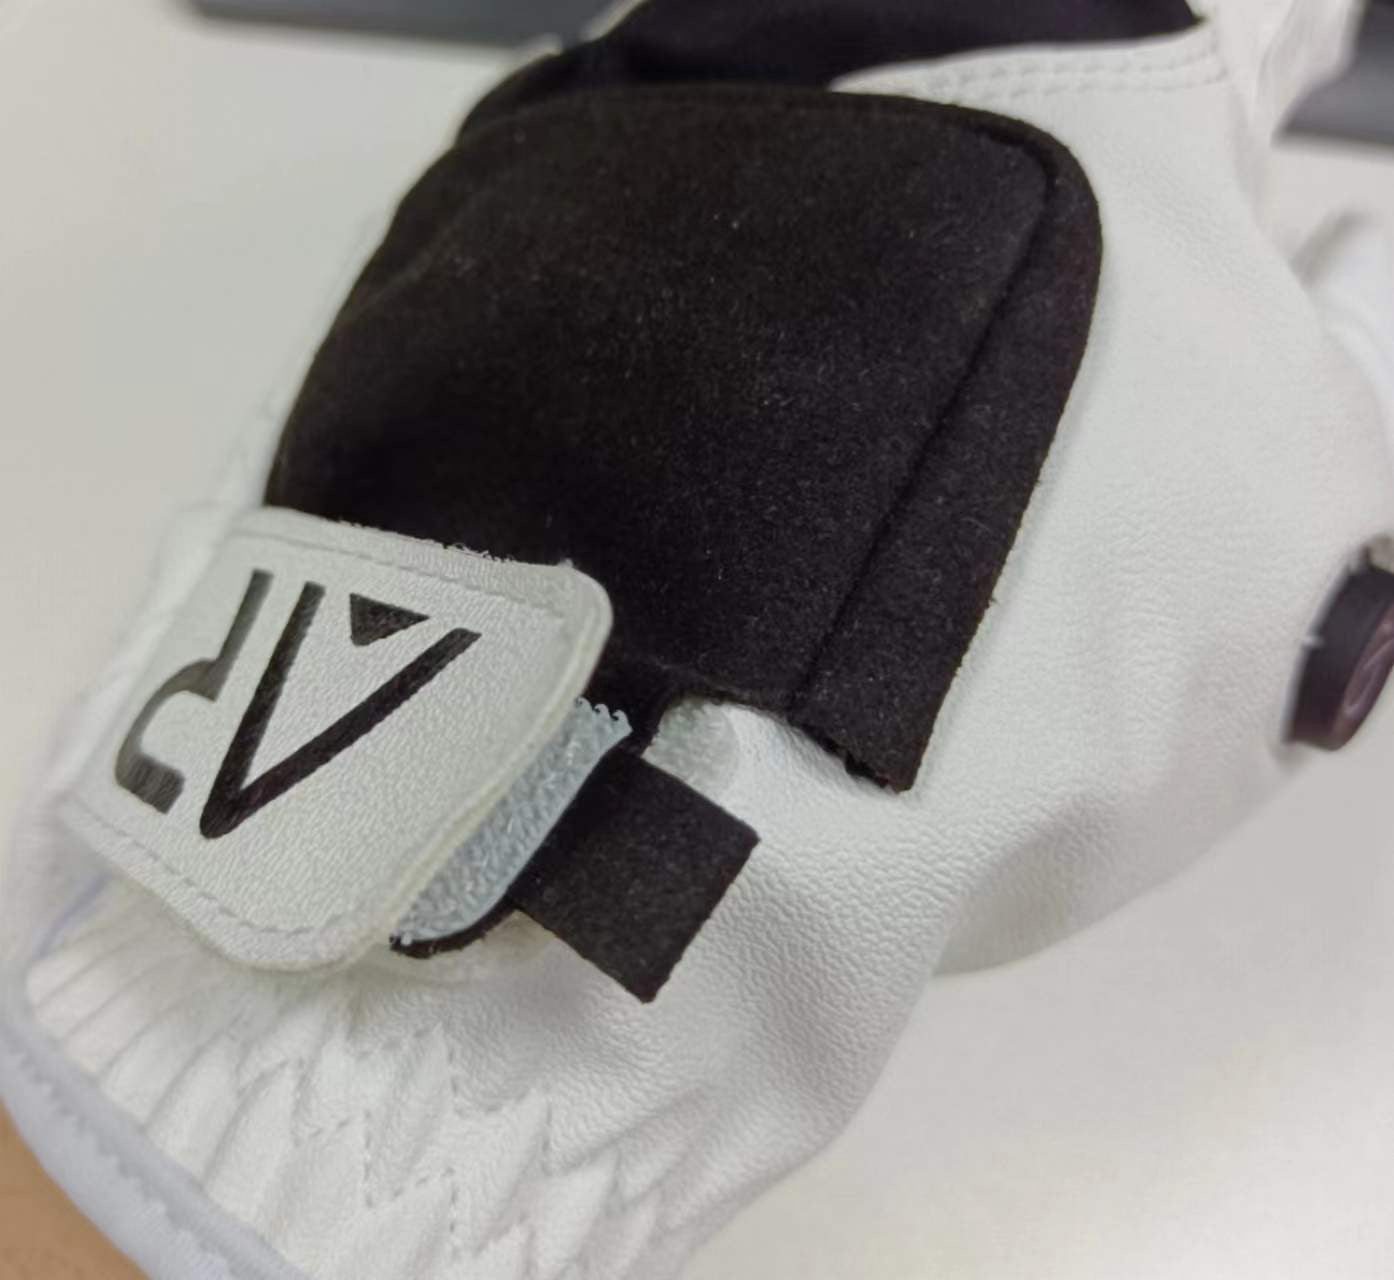 White AR Gen 1 Glove